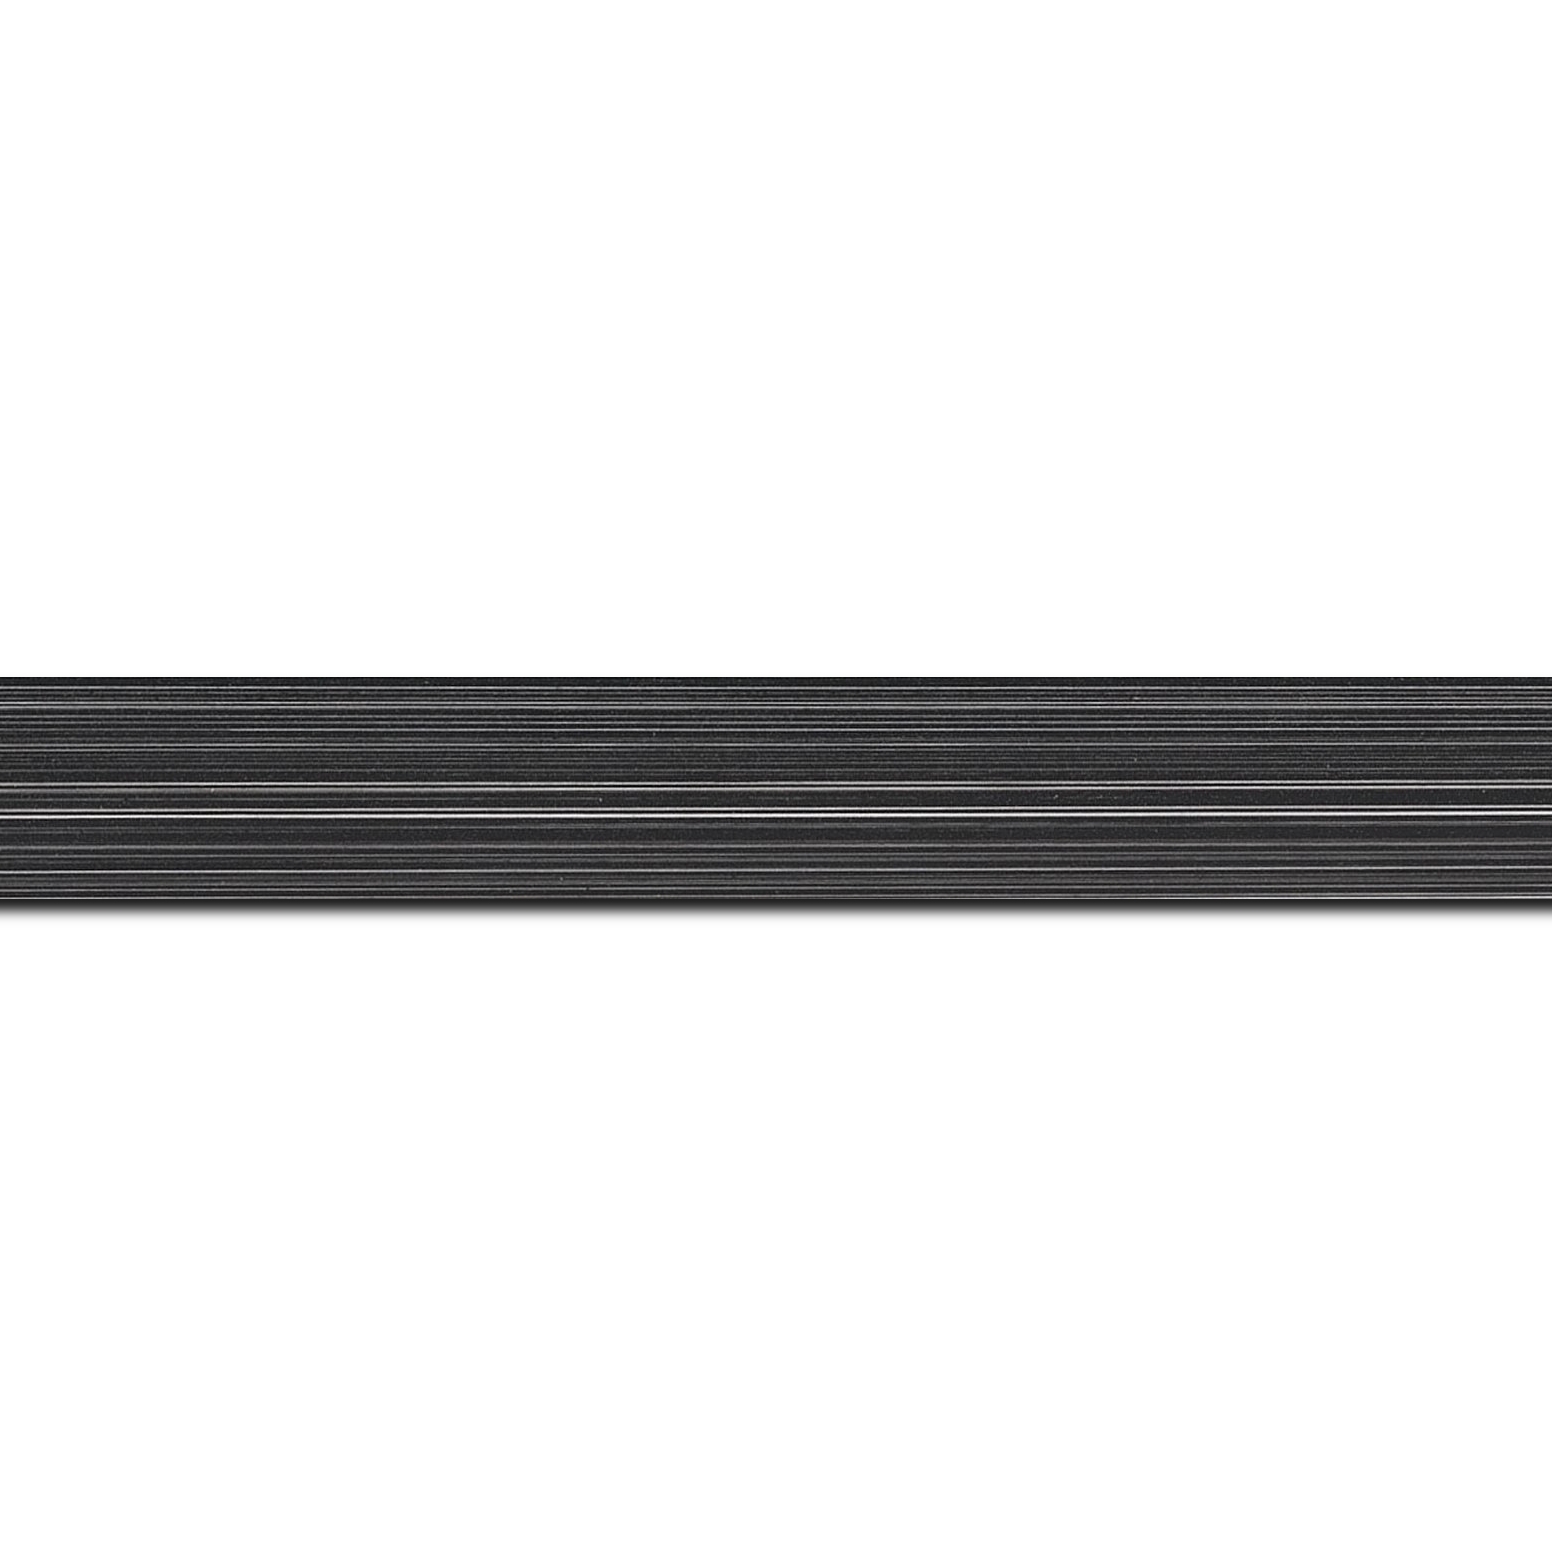 Pack par 12m, bois profil concave largeur 2.4cm couleur noir anthracite effet matière fond blanc (longueur baguette pouvant varier entre 2.40m et 3m selon arrivage des bois)